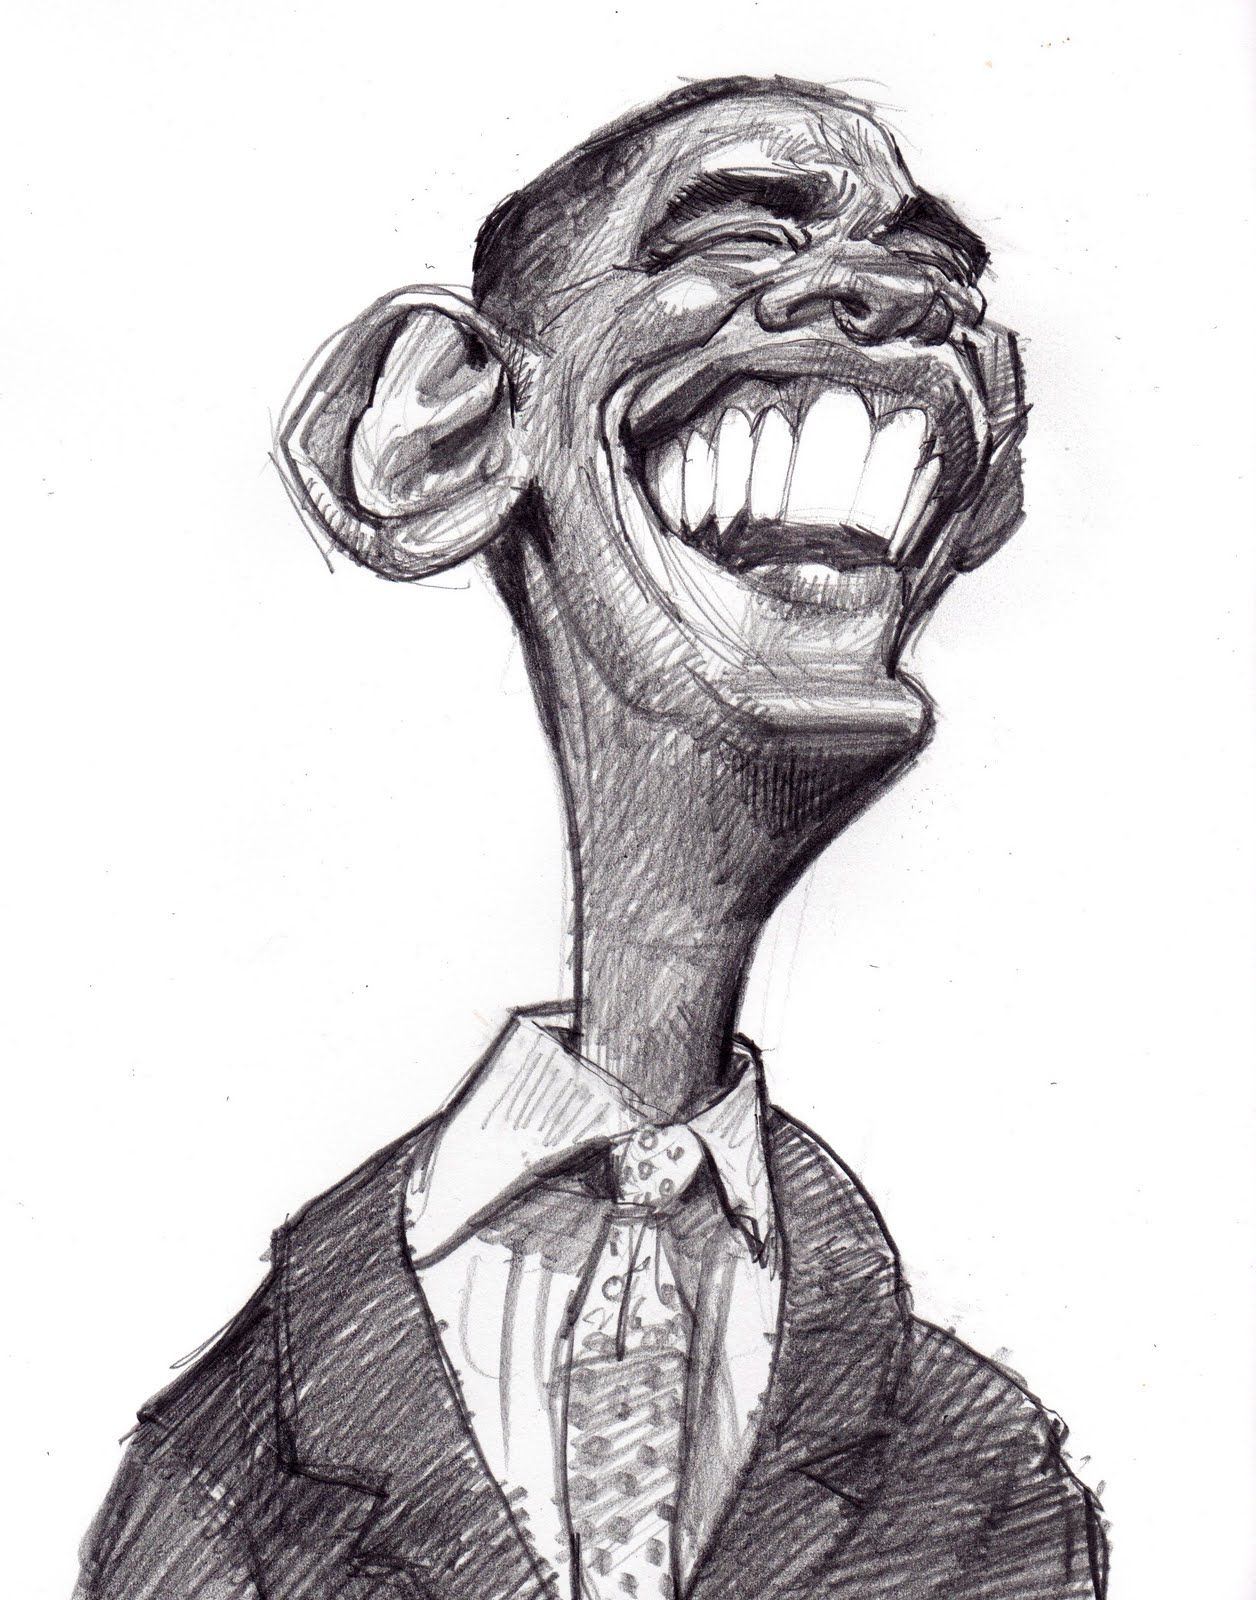 Сатирические изображения человека. Сатирический портрет Обама. Сатирический портрет Артура пирожкова. Сатирический портрет Милохина. Сатирические образы человека.